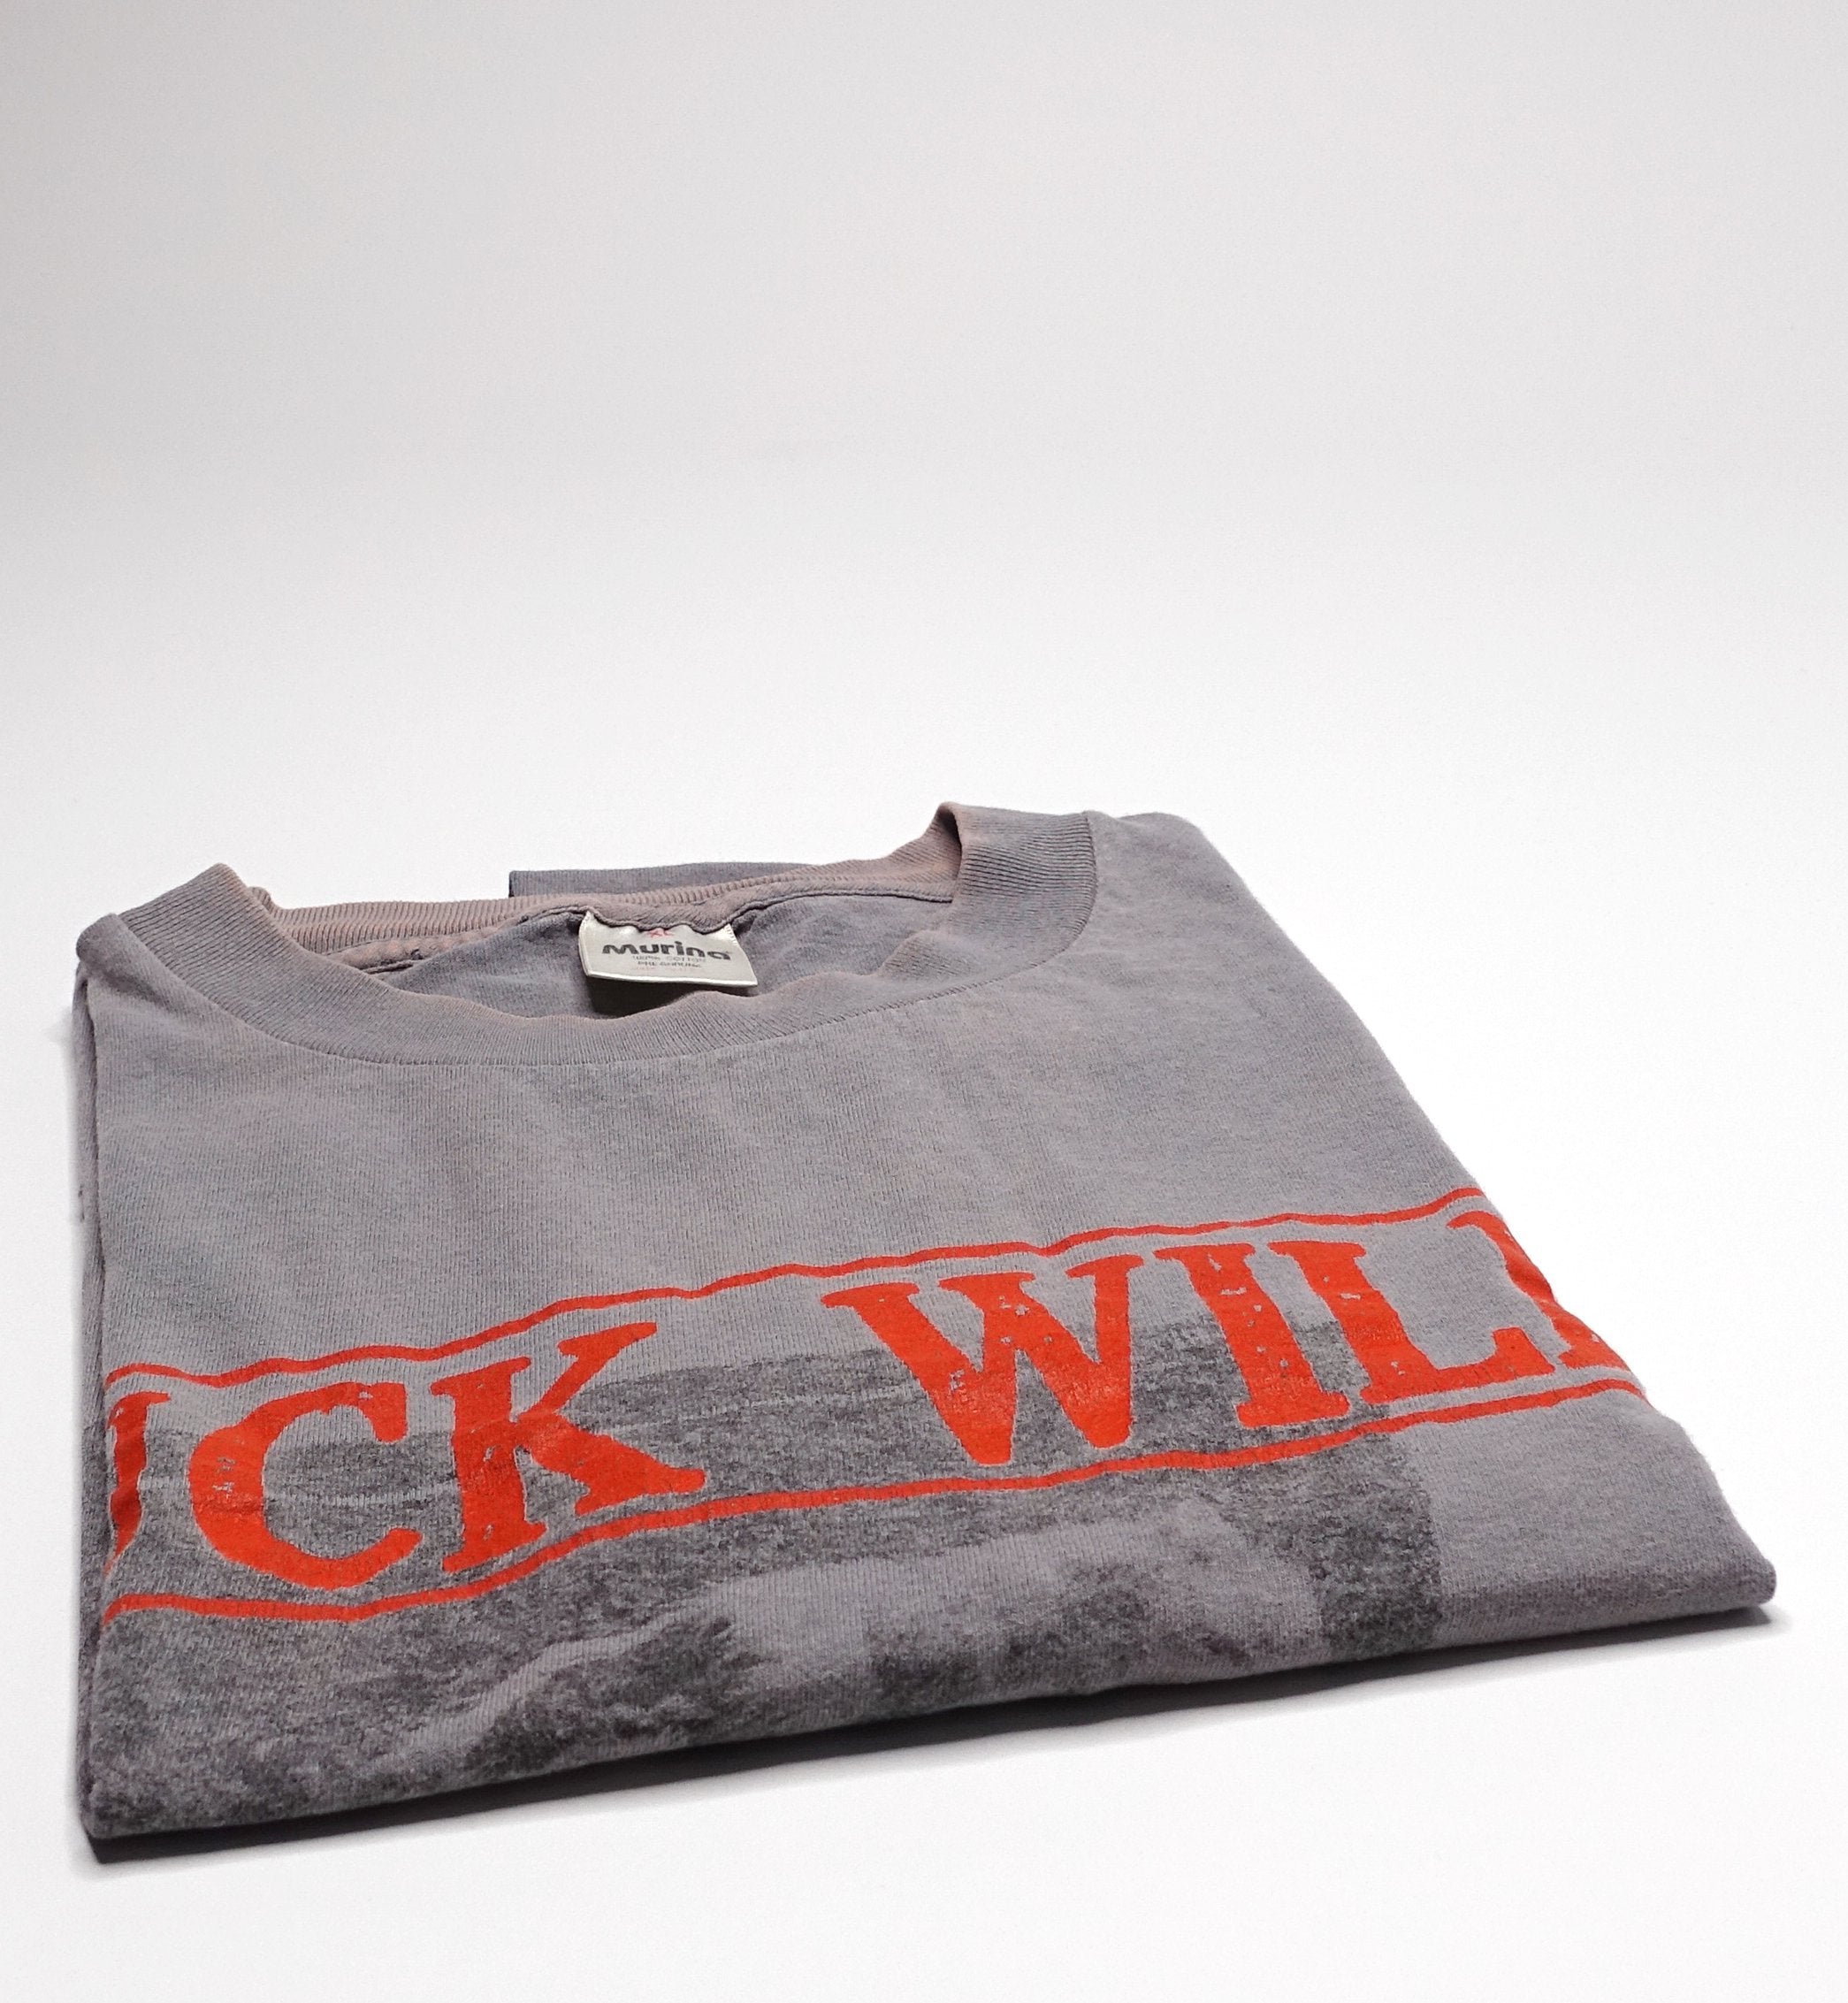 Buck Wild - Beat Me Silly 1996 Tour Shirt Size XL